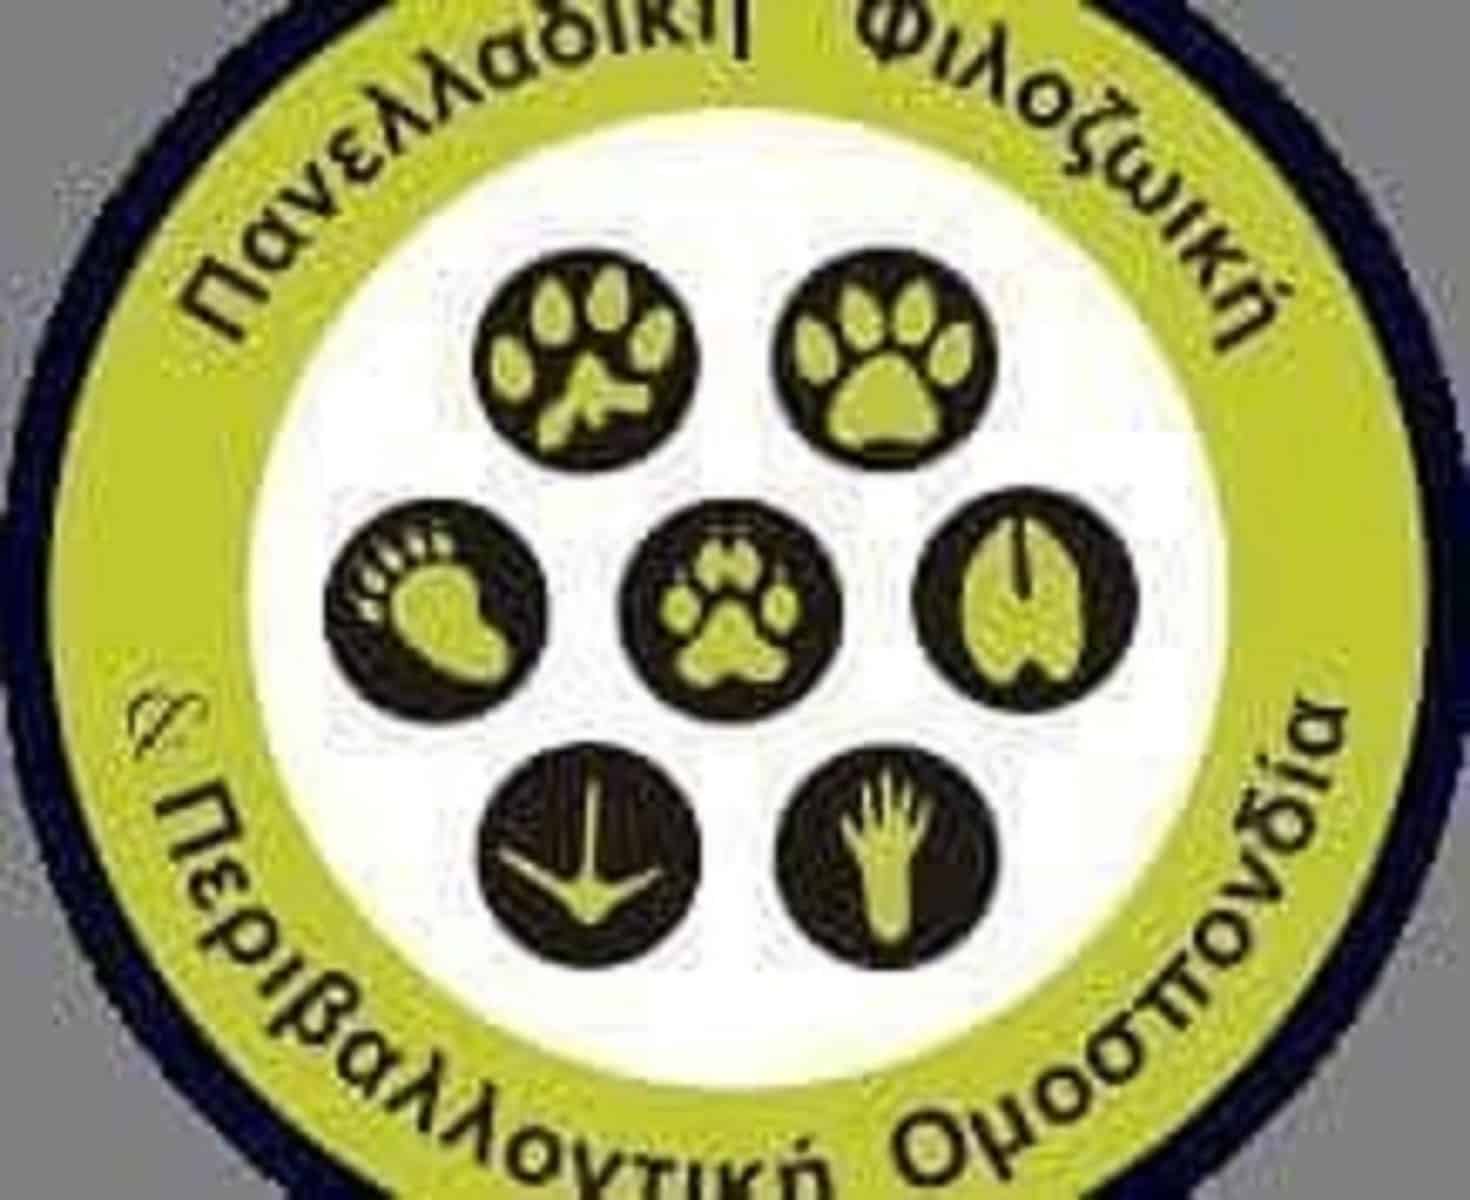 Επιστολή στον Πρωθυπουργό για τις κακοποιήσεις ζώων / Letter to Greek Prime Minister on animal abuse